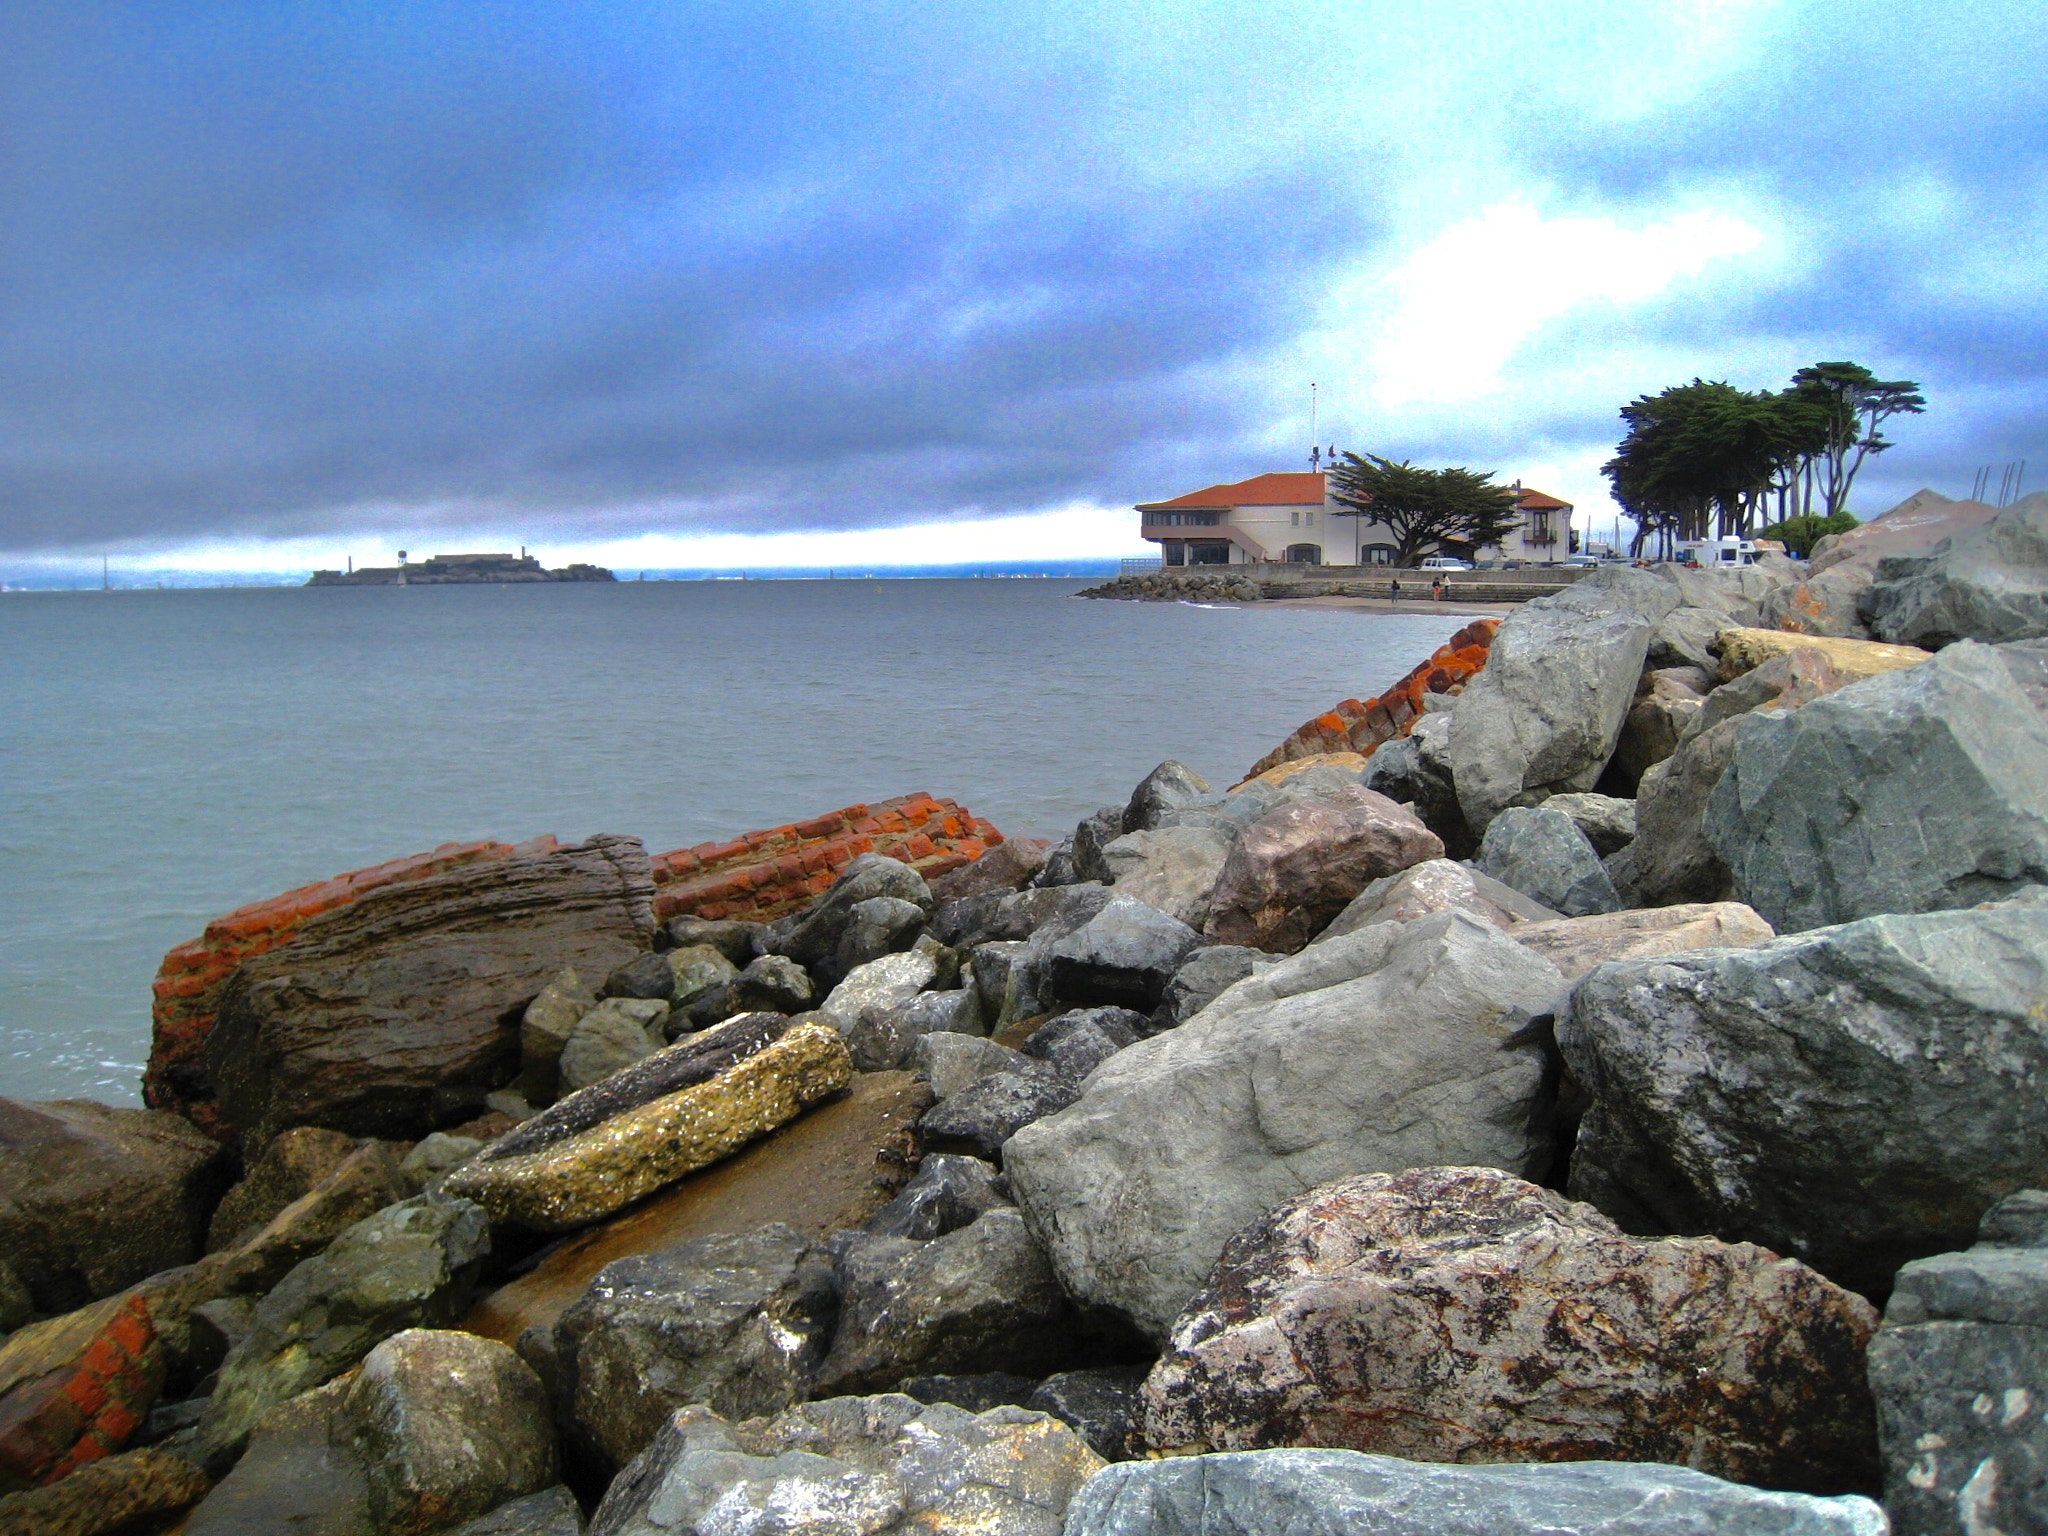 Canon POWERSHOT SD870 IS sample photo. Alcatraz from yacht club, san francisco, california 2009 photography